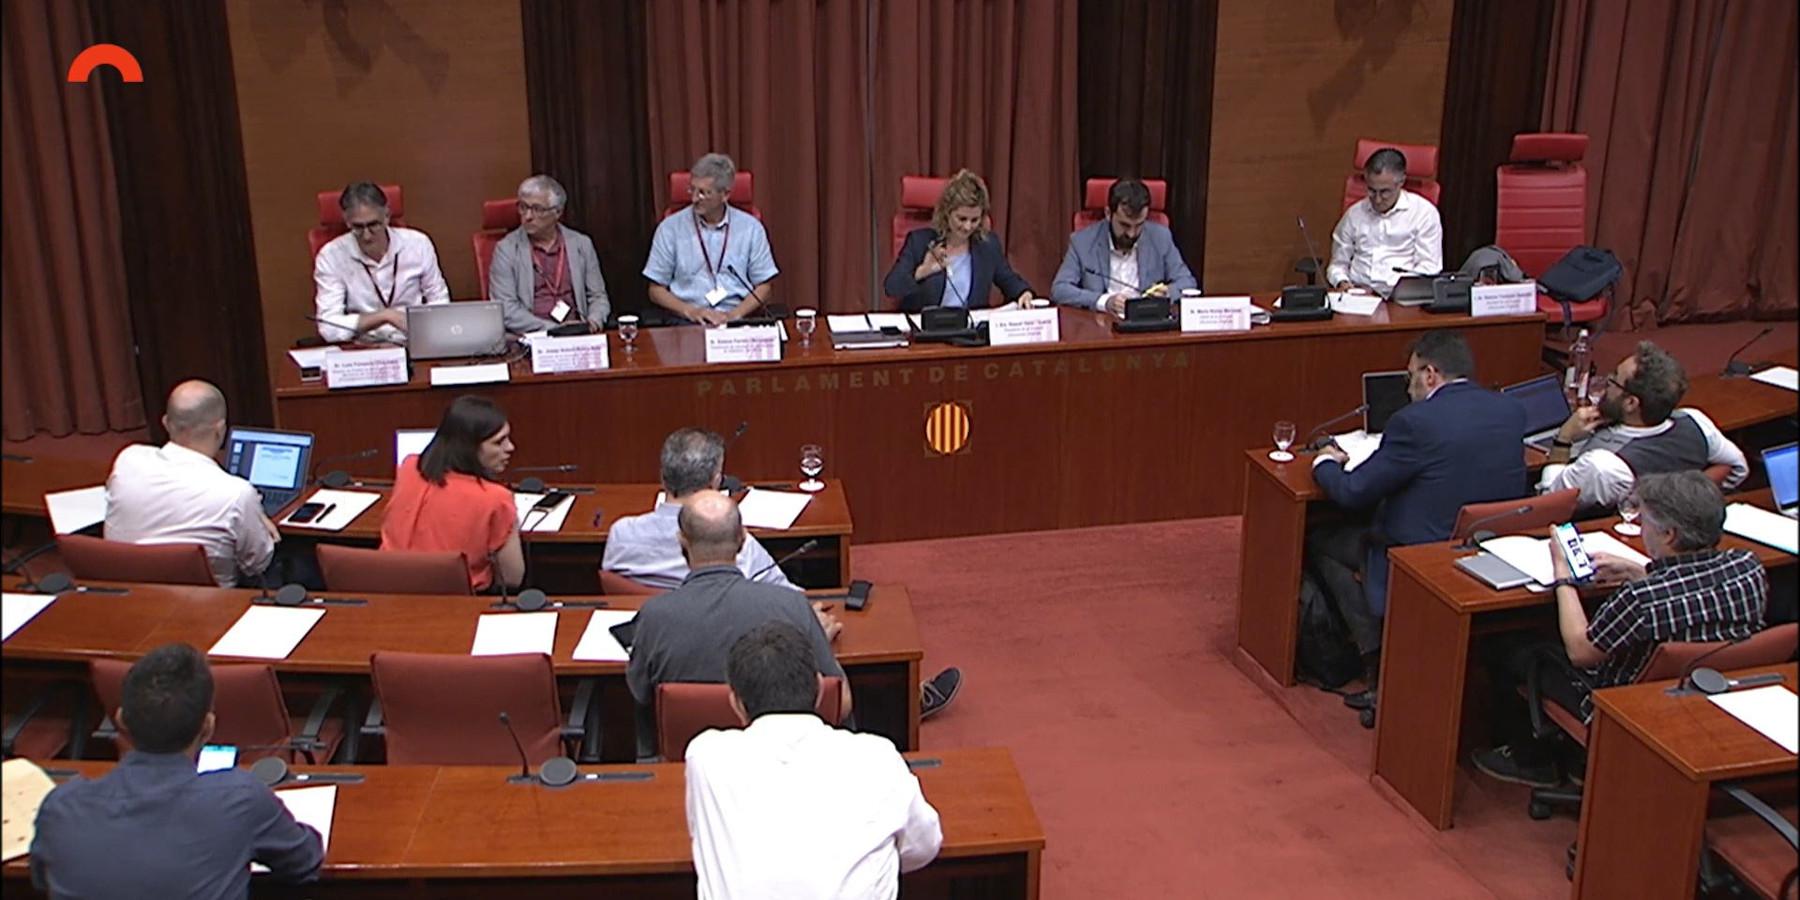 Taula de presentacions i diputats al Parlament de Catalunya per parlar de FabCat